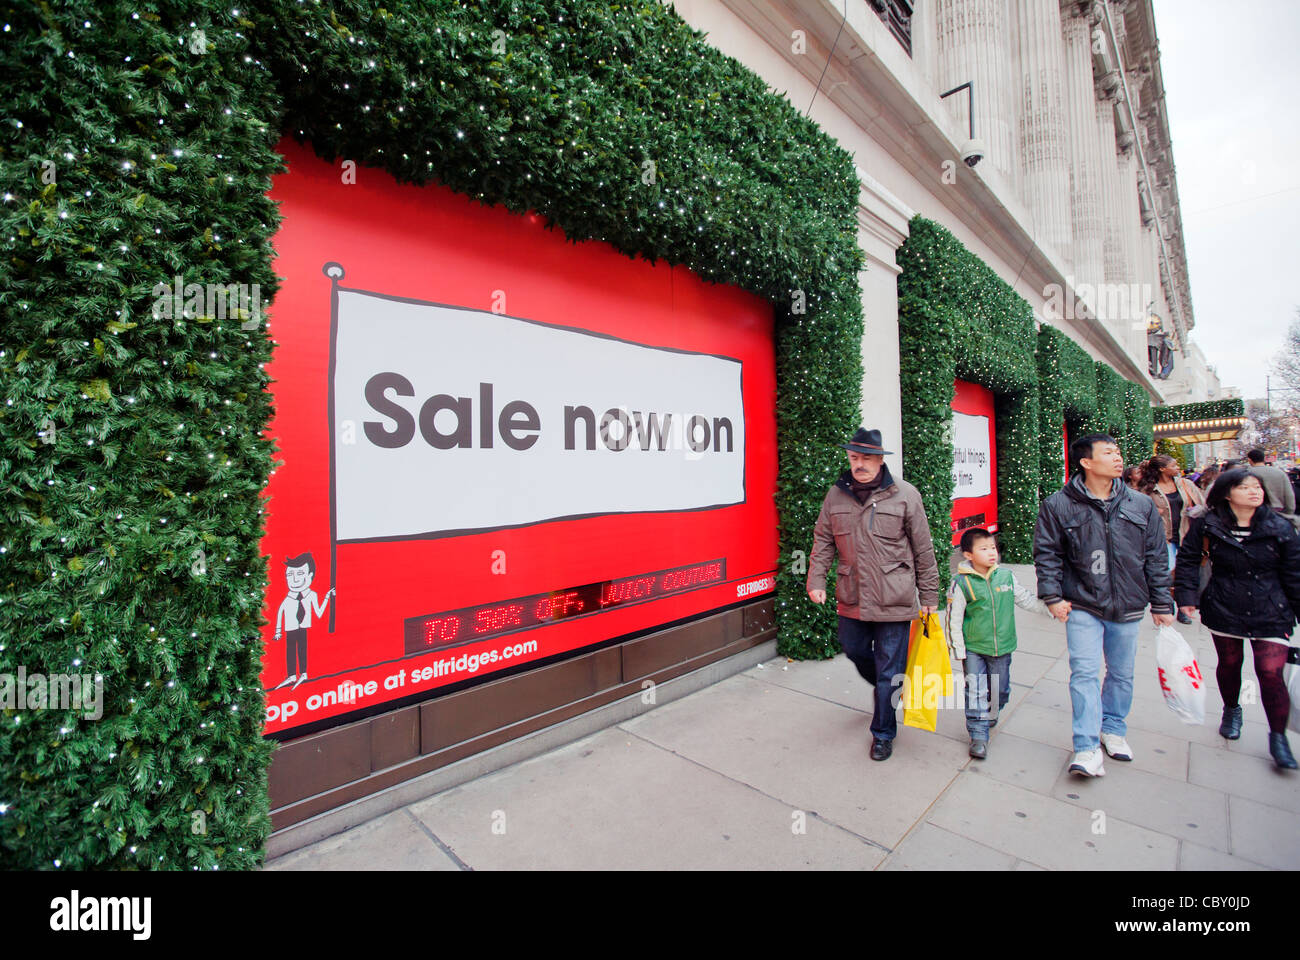 Le lendemain de la vente à Selfrodge Store, Oxford Street, Londres, Angleterre, Royaume-Uni, Europe Banque D'Images